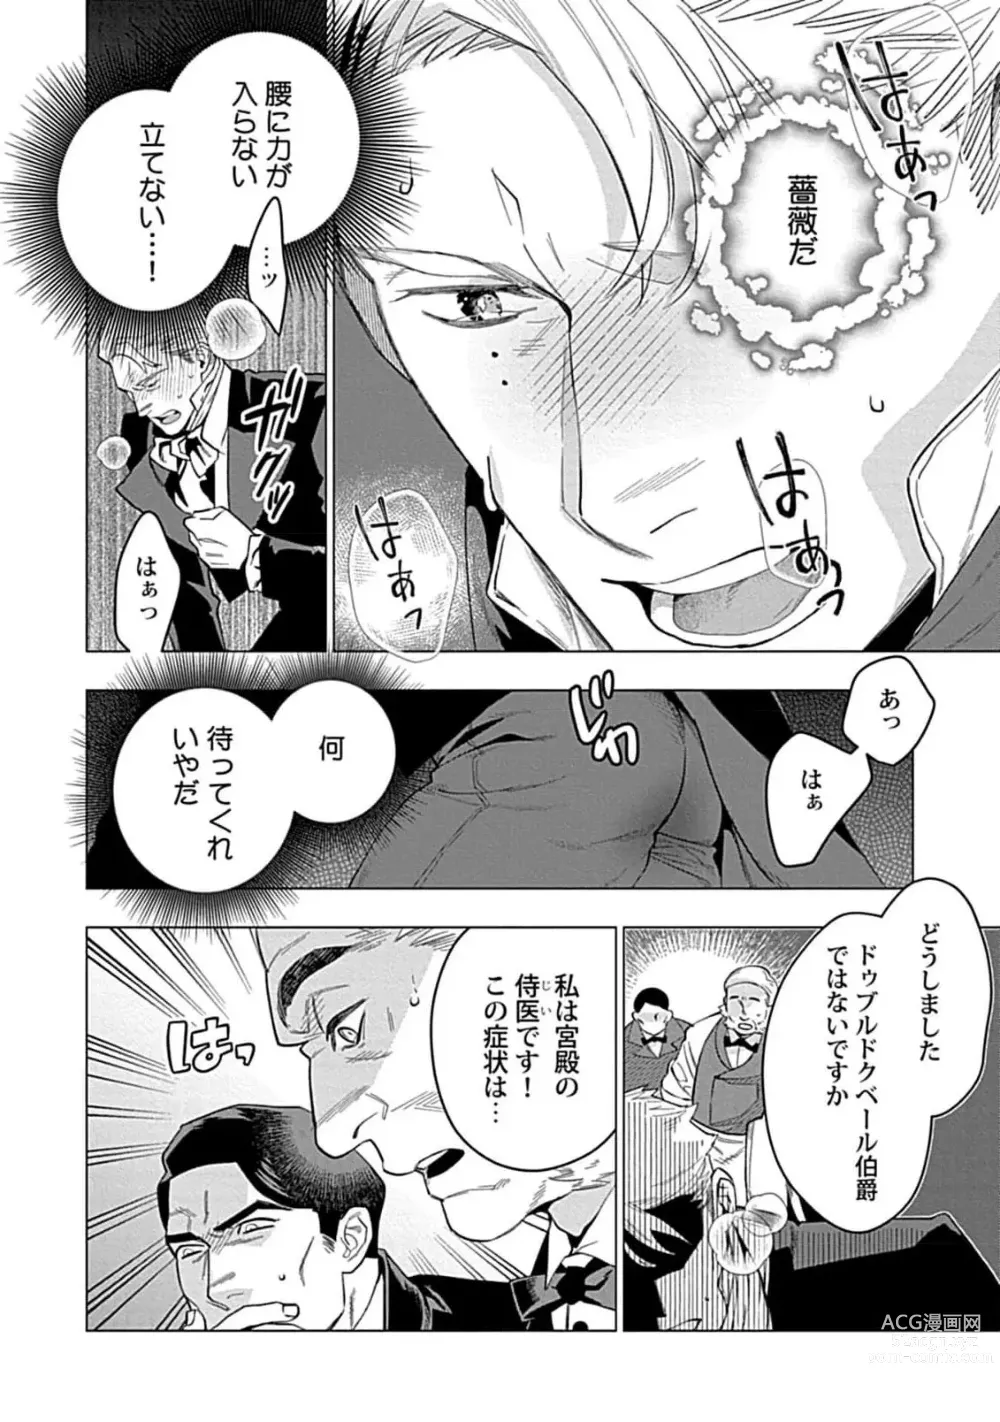 Page 18 of manga Hoshikuzu no Debutante - Debutante of Stardust 1